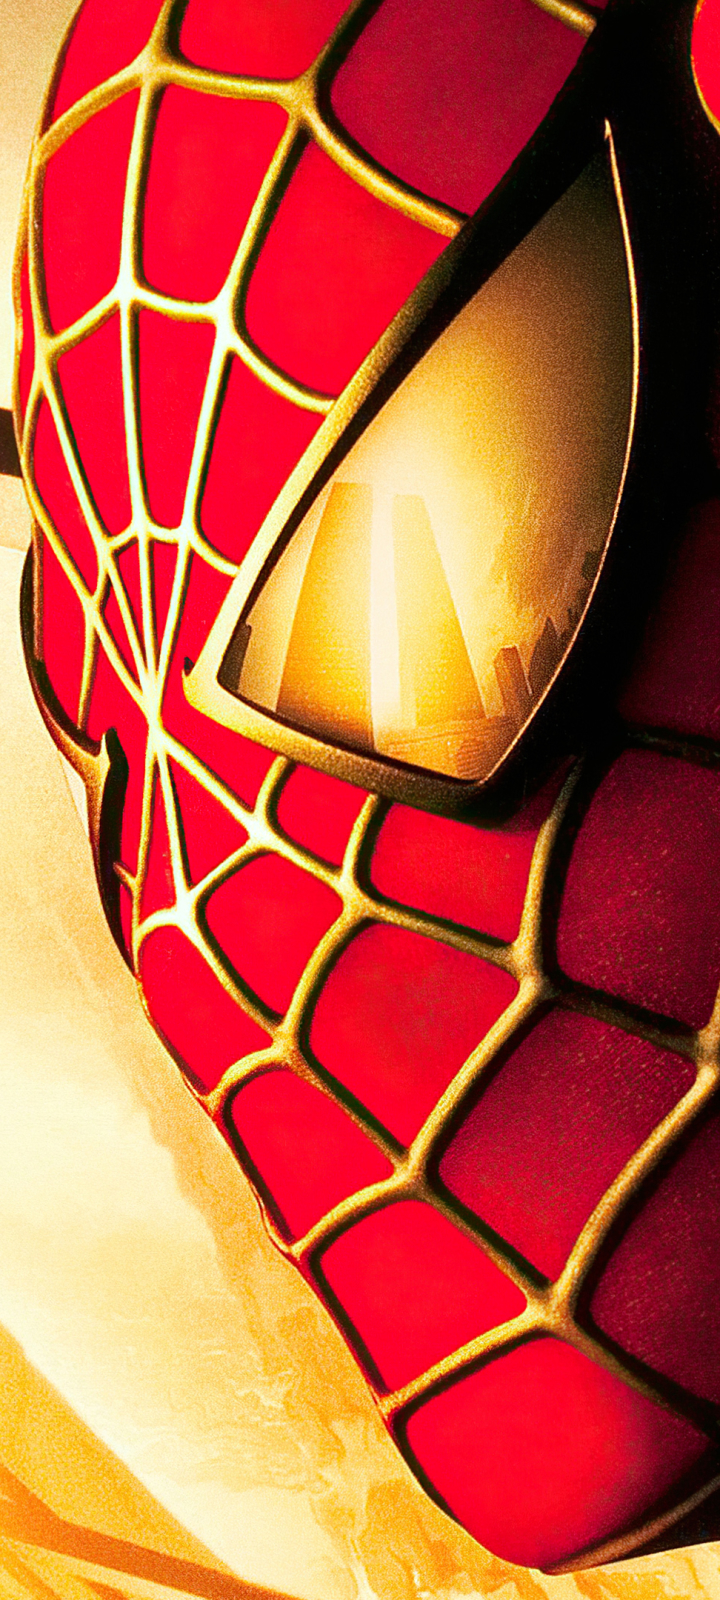 Descarga gratuita de fondo de pantalla para móvil de Películas, Spider Man, Peter Parker.